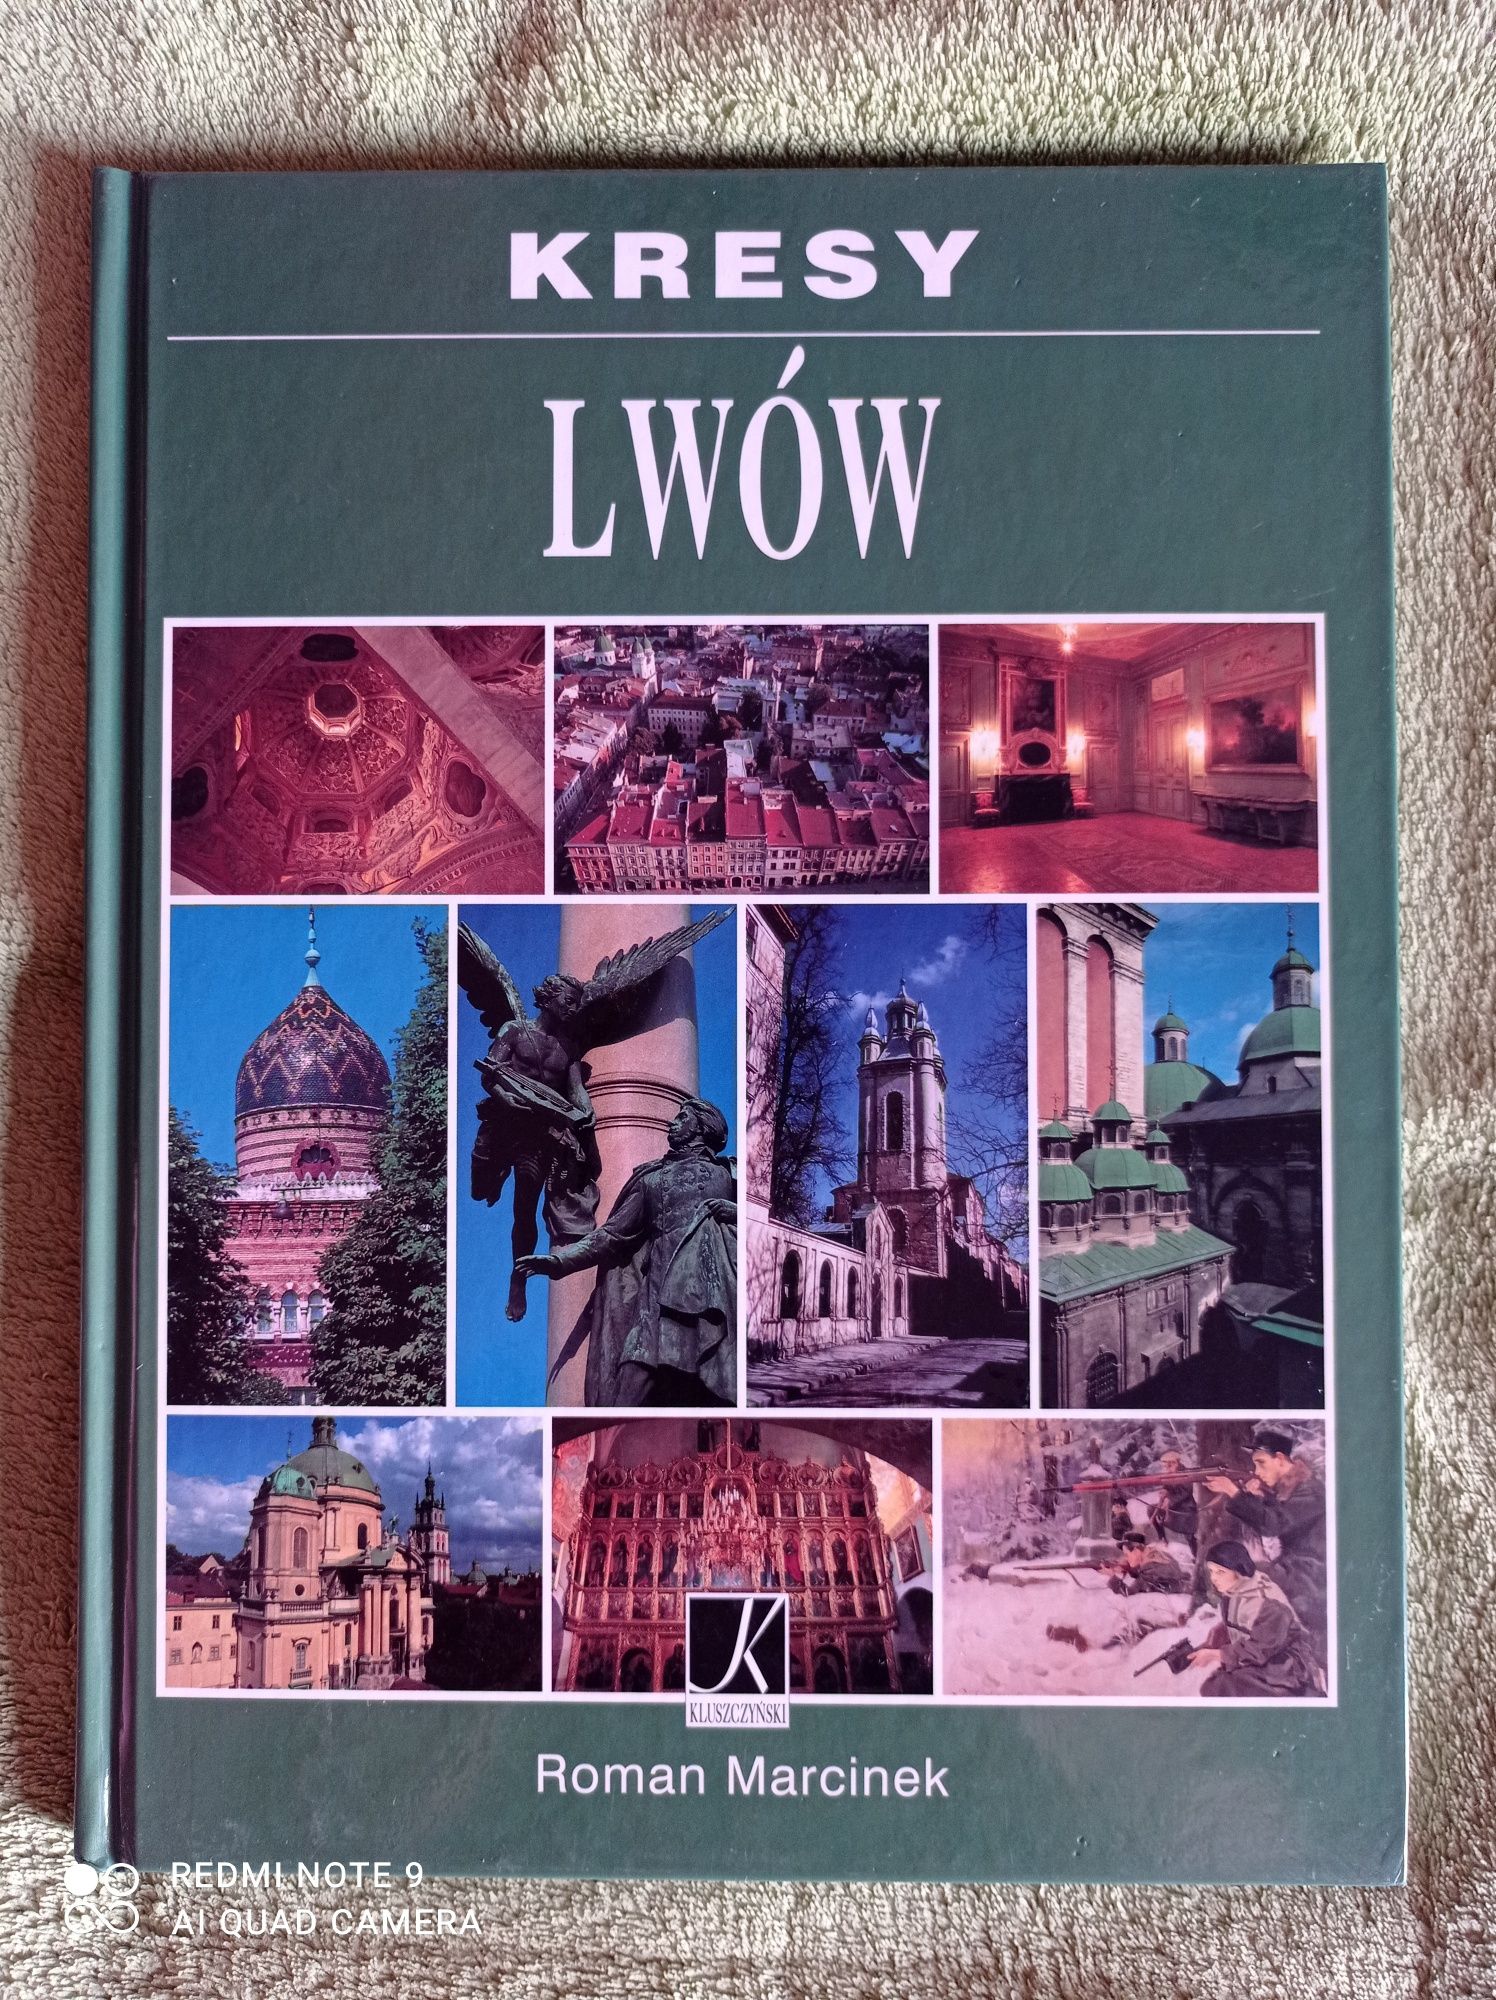 Kresy - Lwów - album